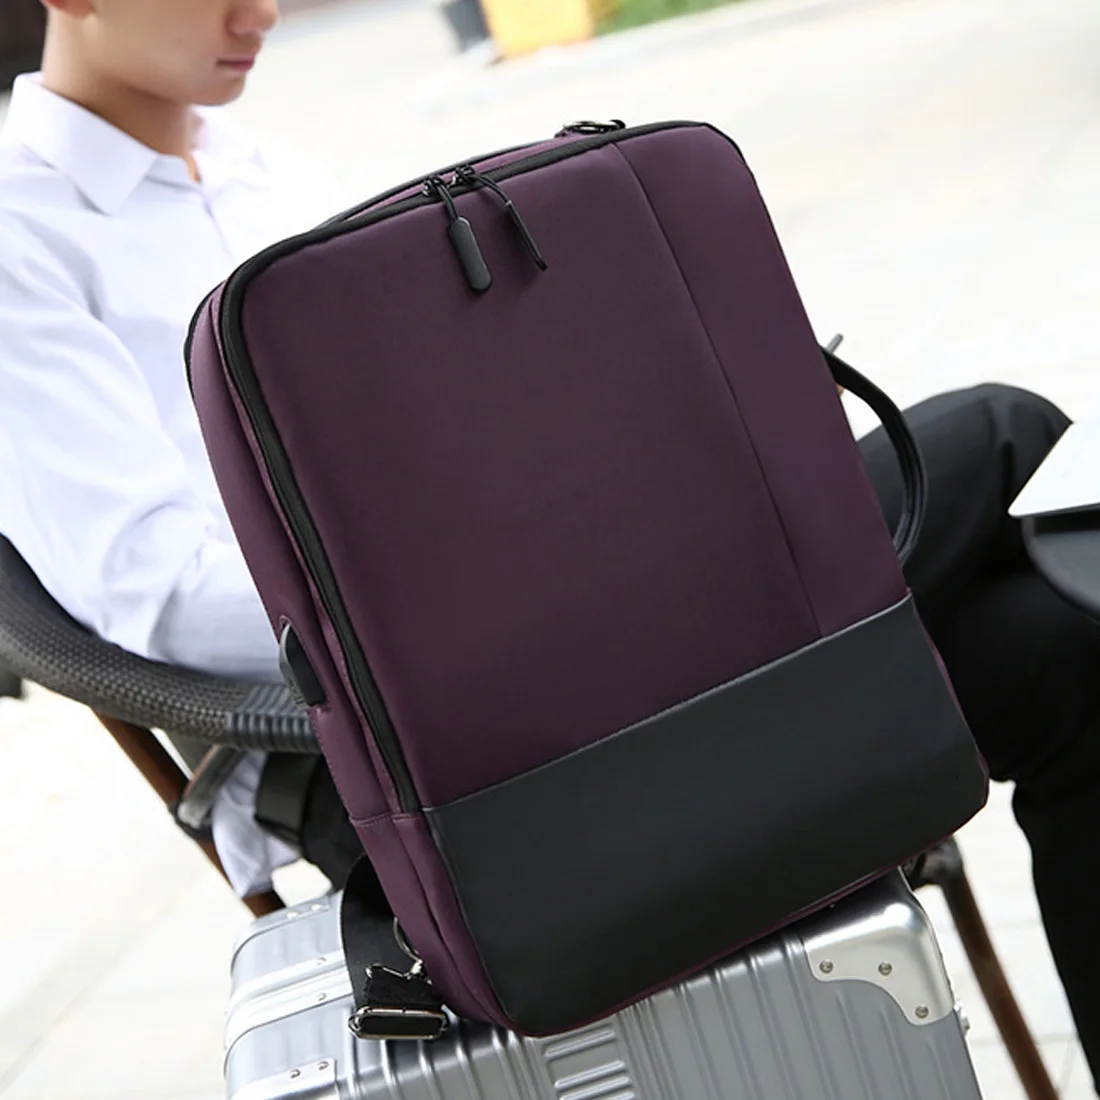 Многофункциональная Водонепроницаемая Противоугонная сумка для ноутбука, сумка на плечо для мужчин и женщин, сумка для ноутбука, рюкзак 17 дюймов